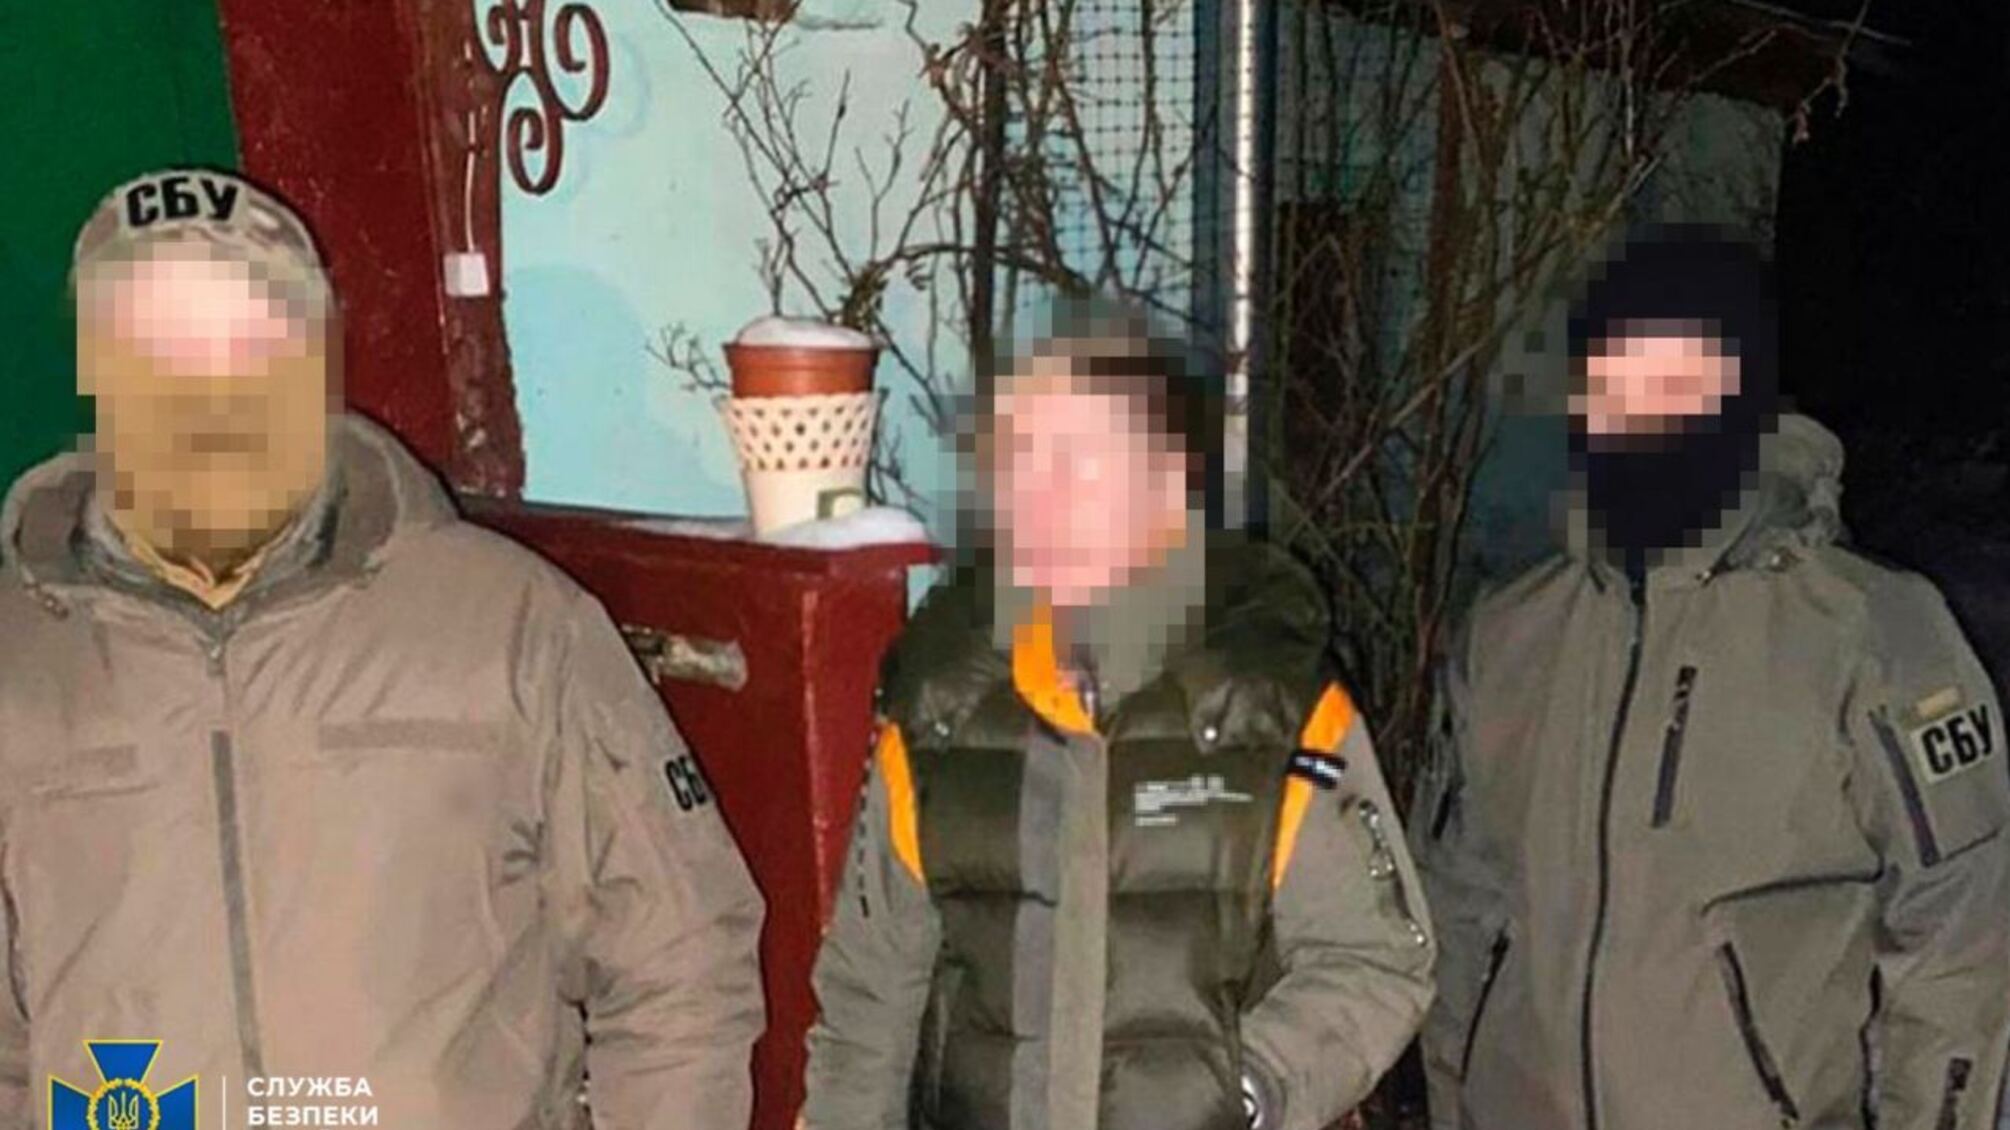 СБУ в Харьковской области задержала российскую агентку, которая собирала разведданные об обороне Украины